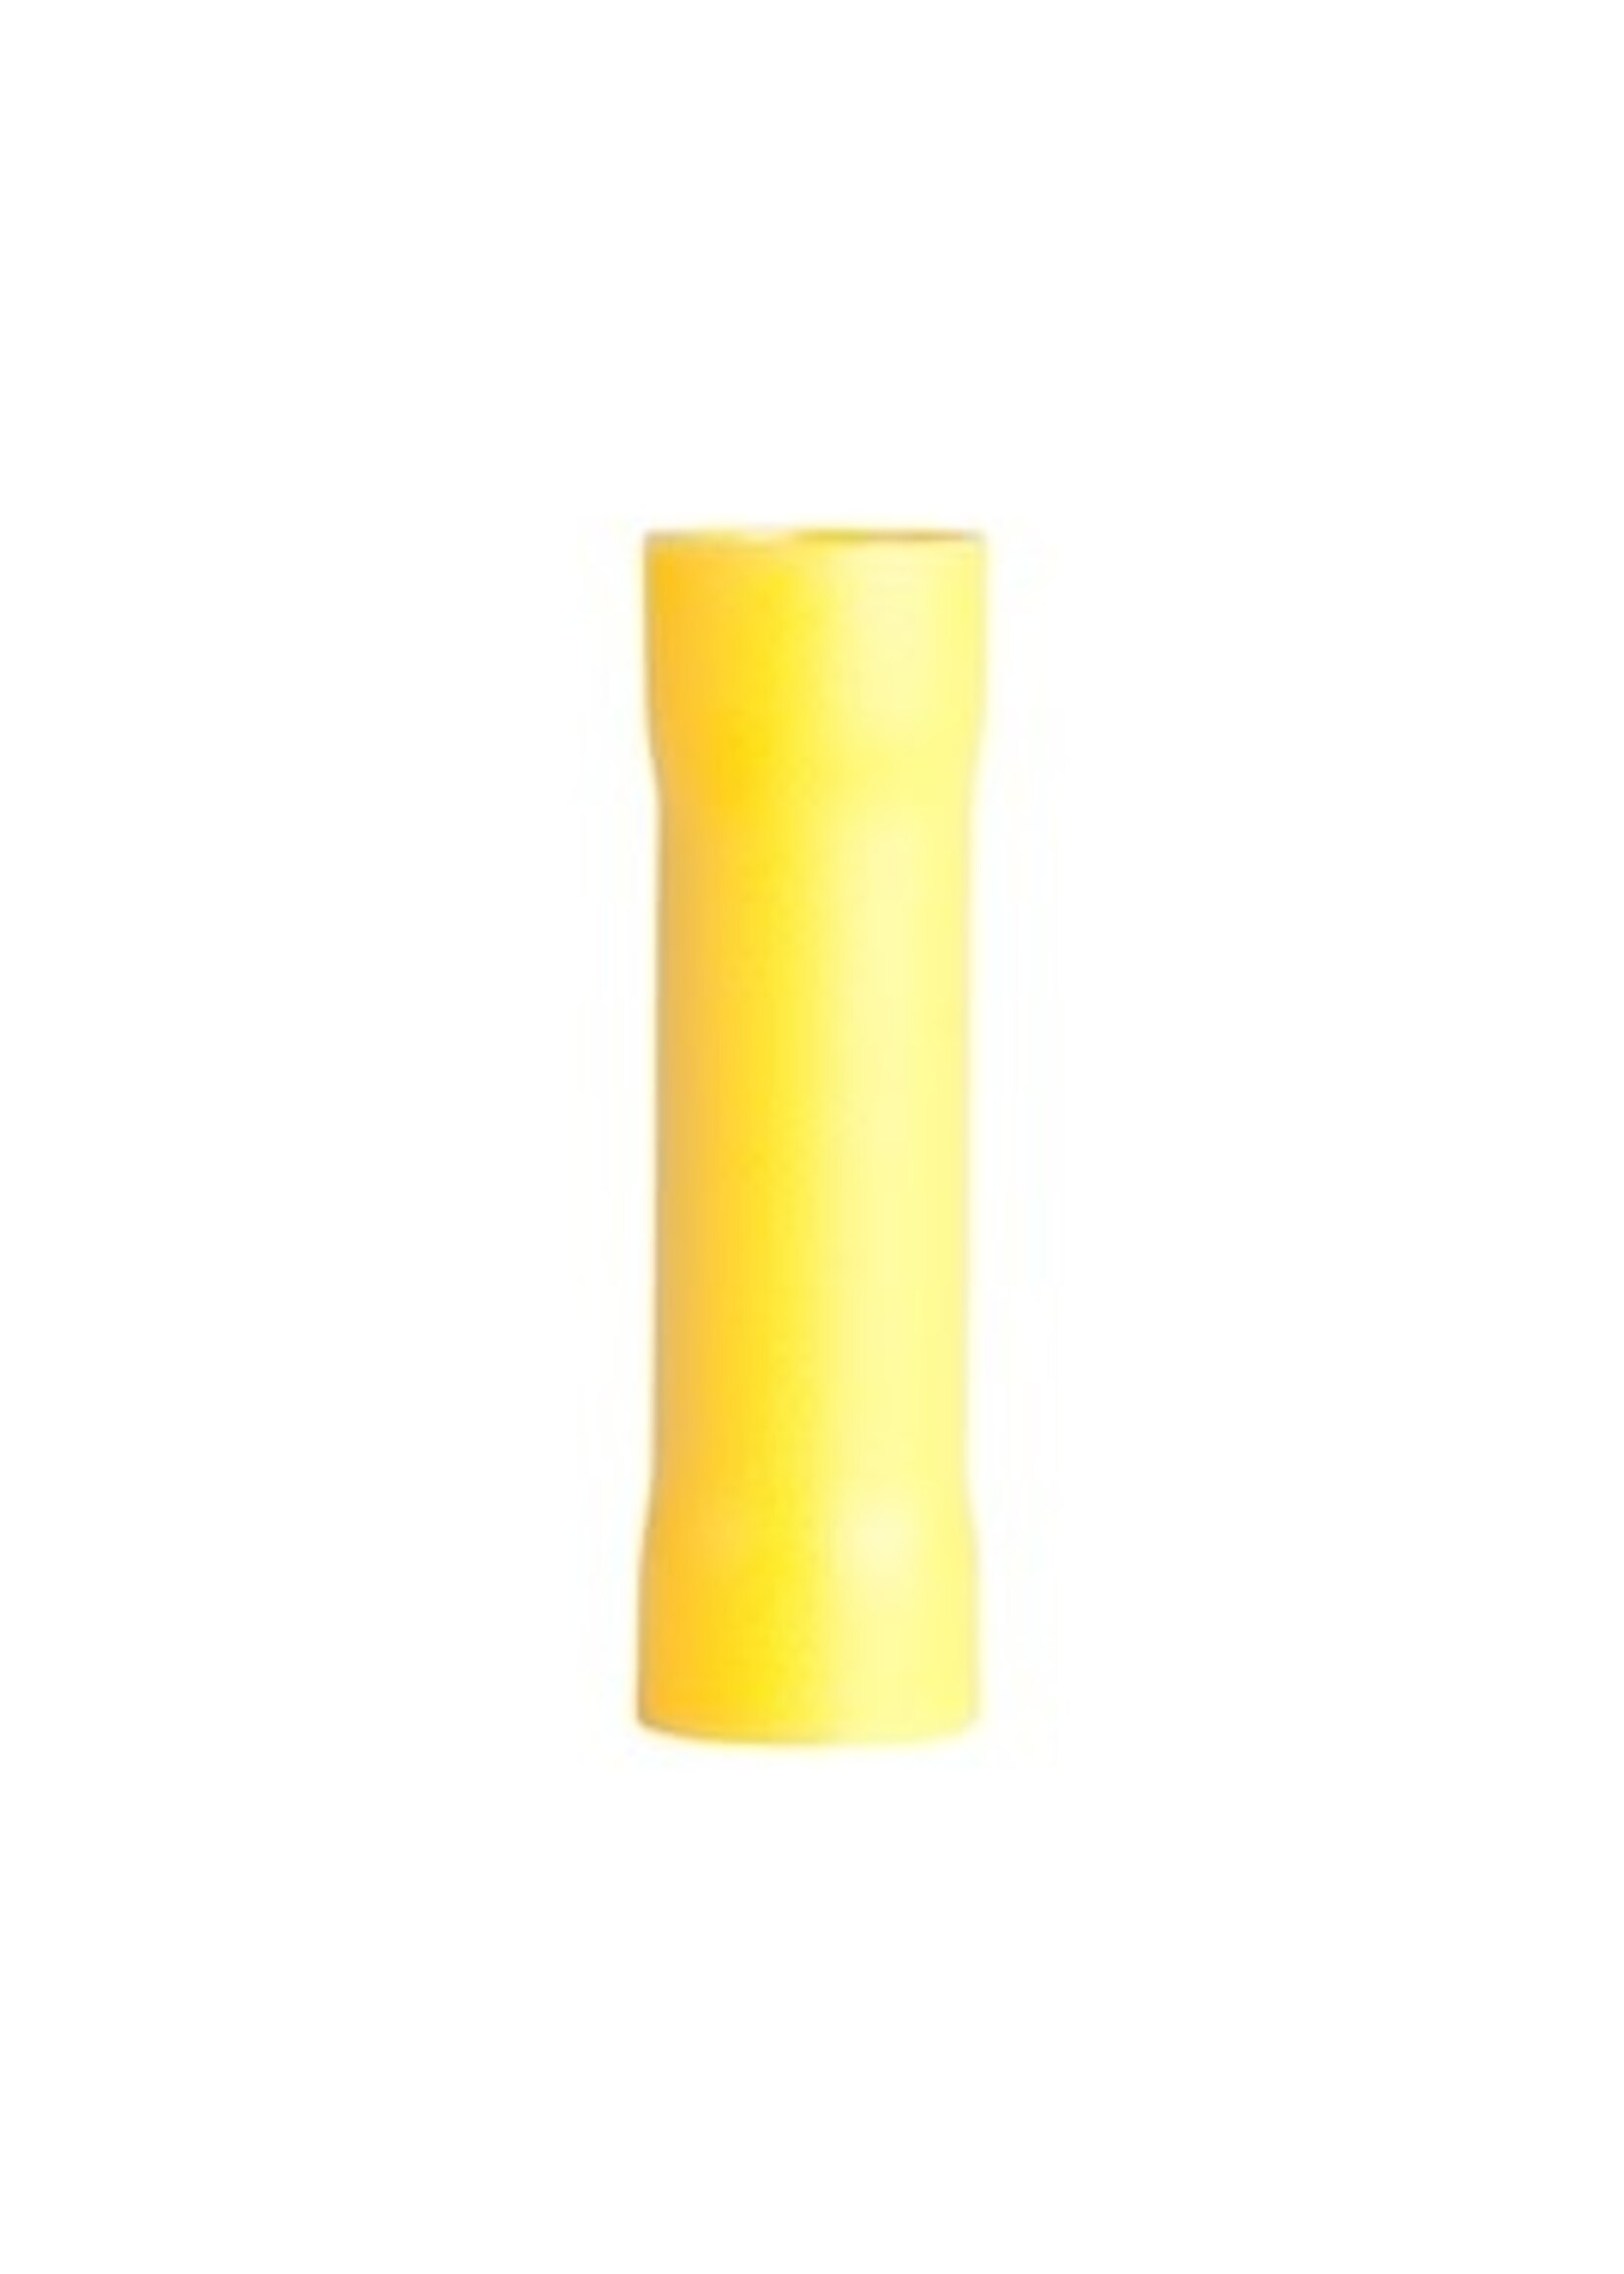 GARDNER BENDER Butt Splice, Crimp Connector, #12-#10 AWG (5 mm²), Vinyl Insulated, Yellow, (15/Pkg) -20-126